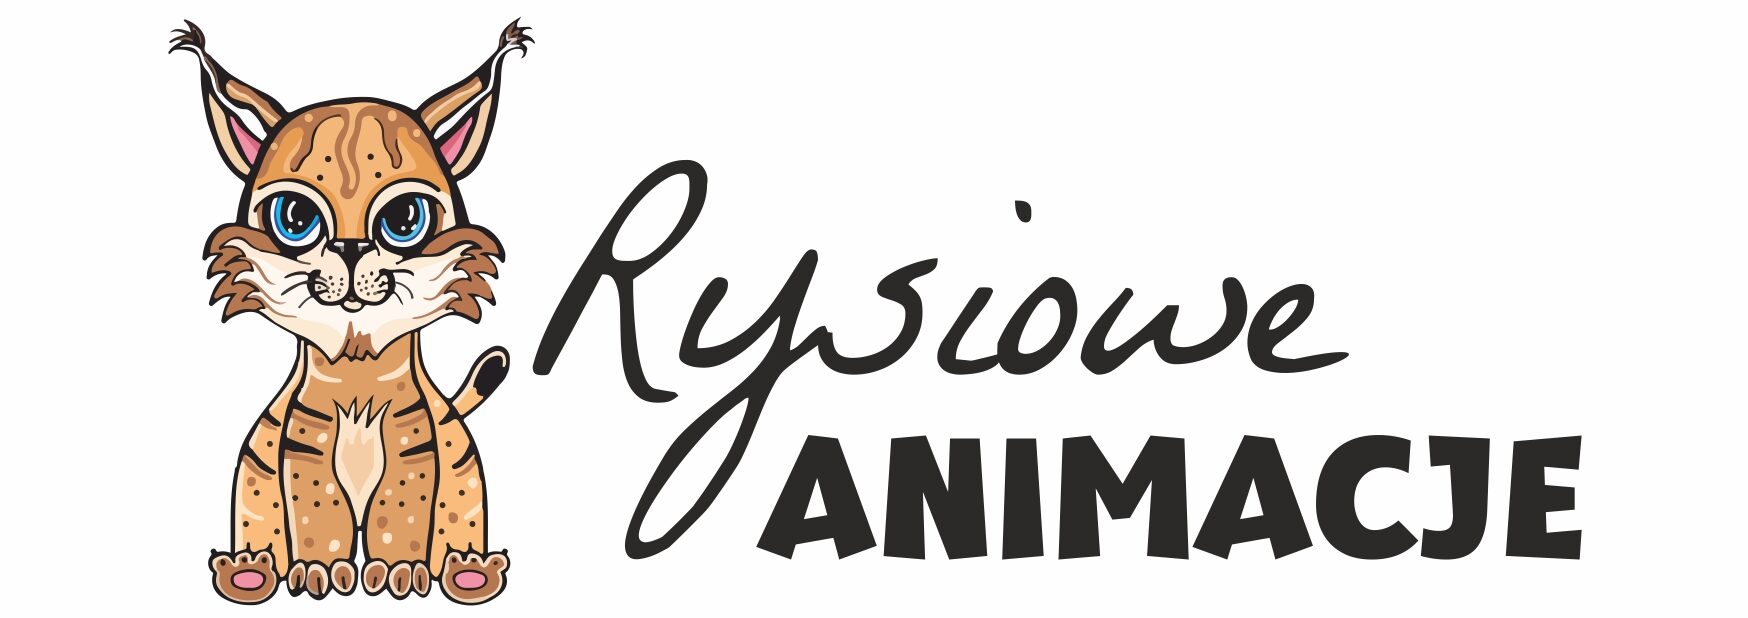 animator dla dzieci na imprezy firmowe łódź logo